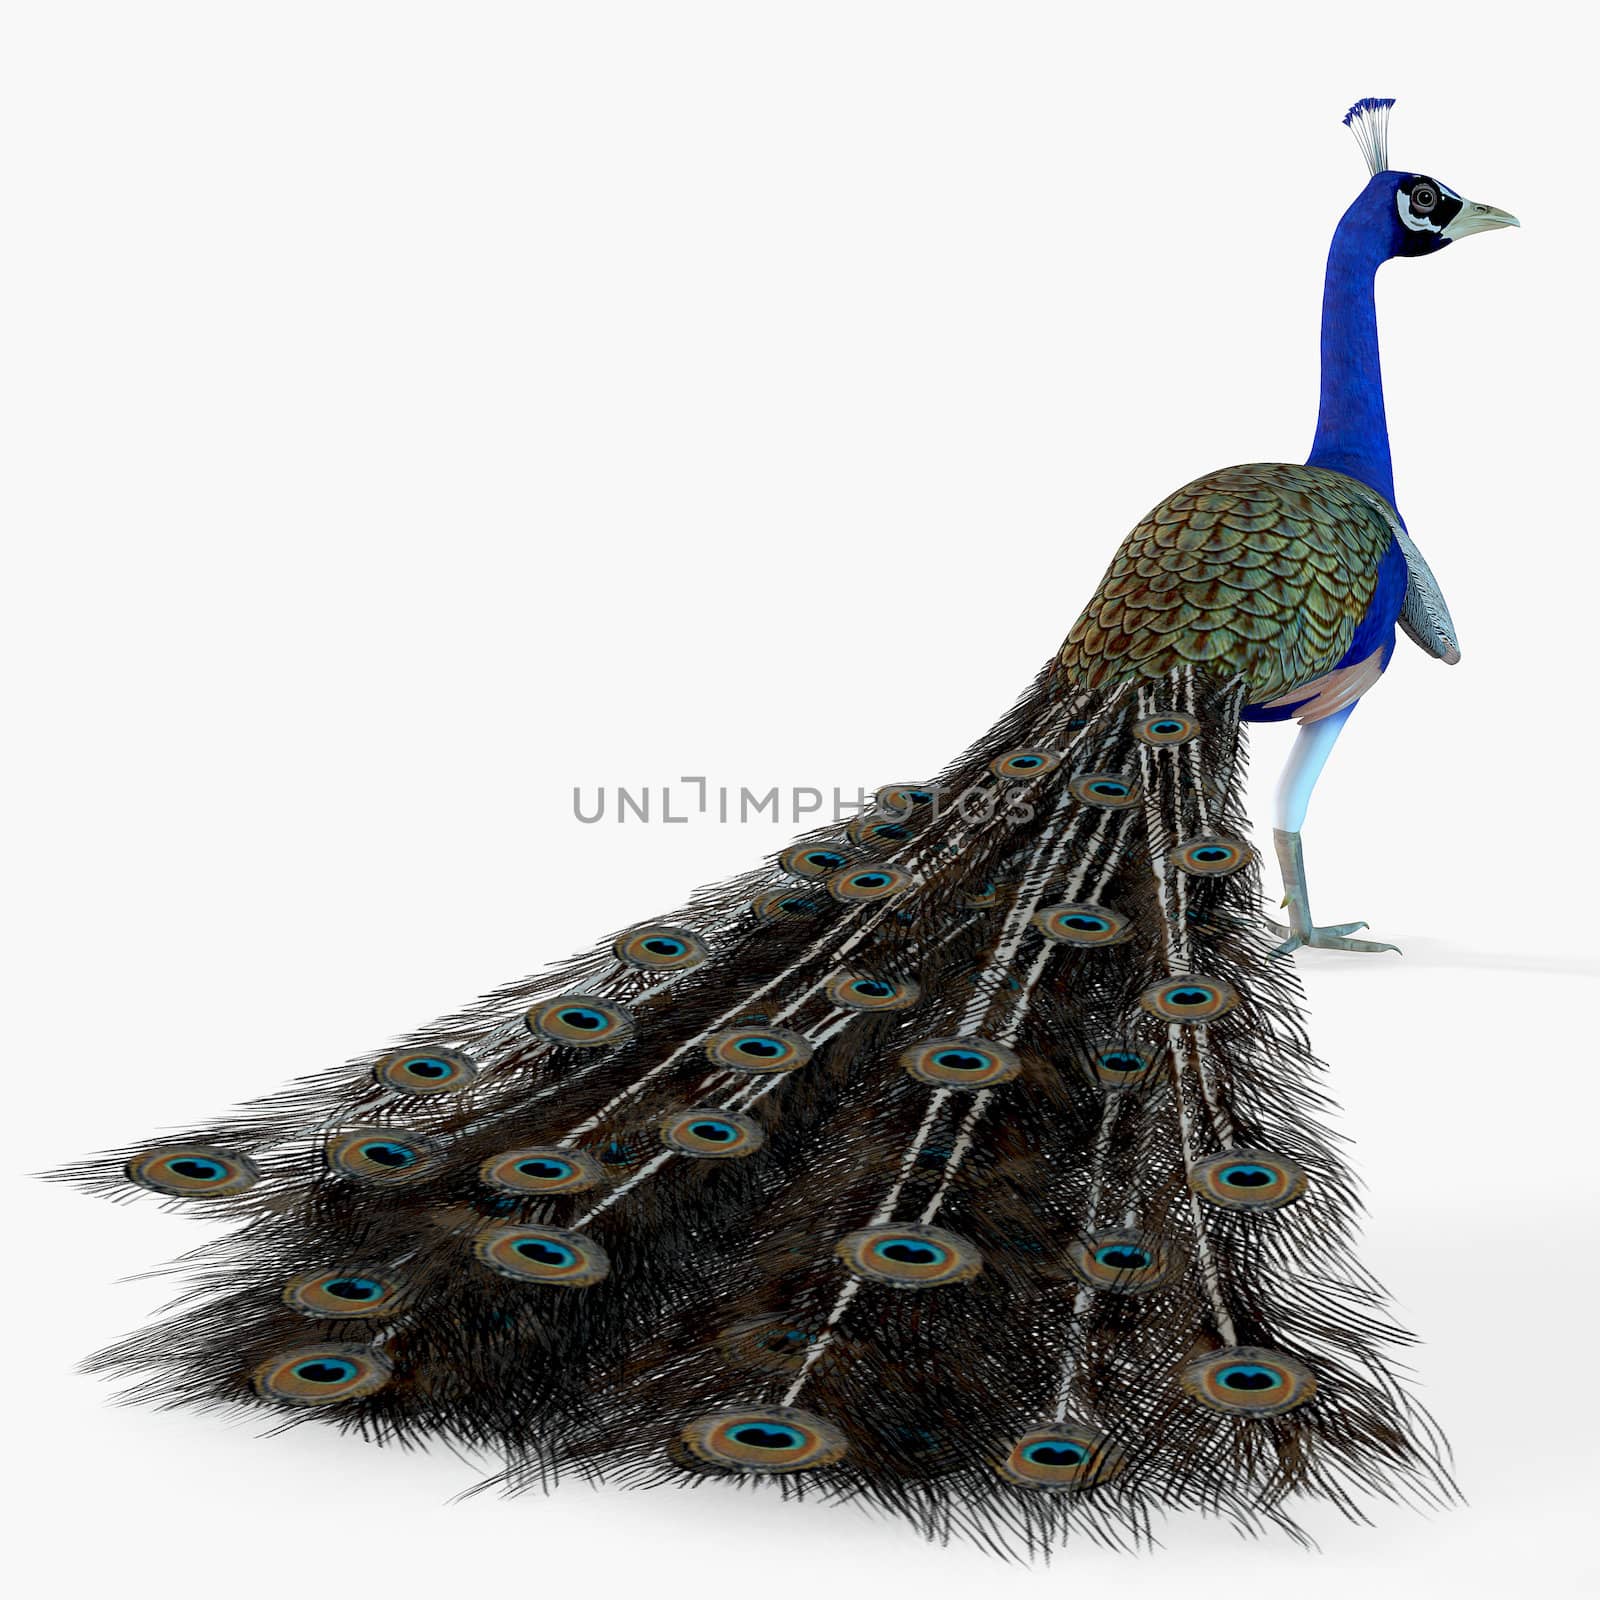 Peacock Profile by Catmando